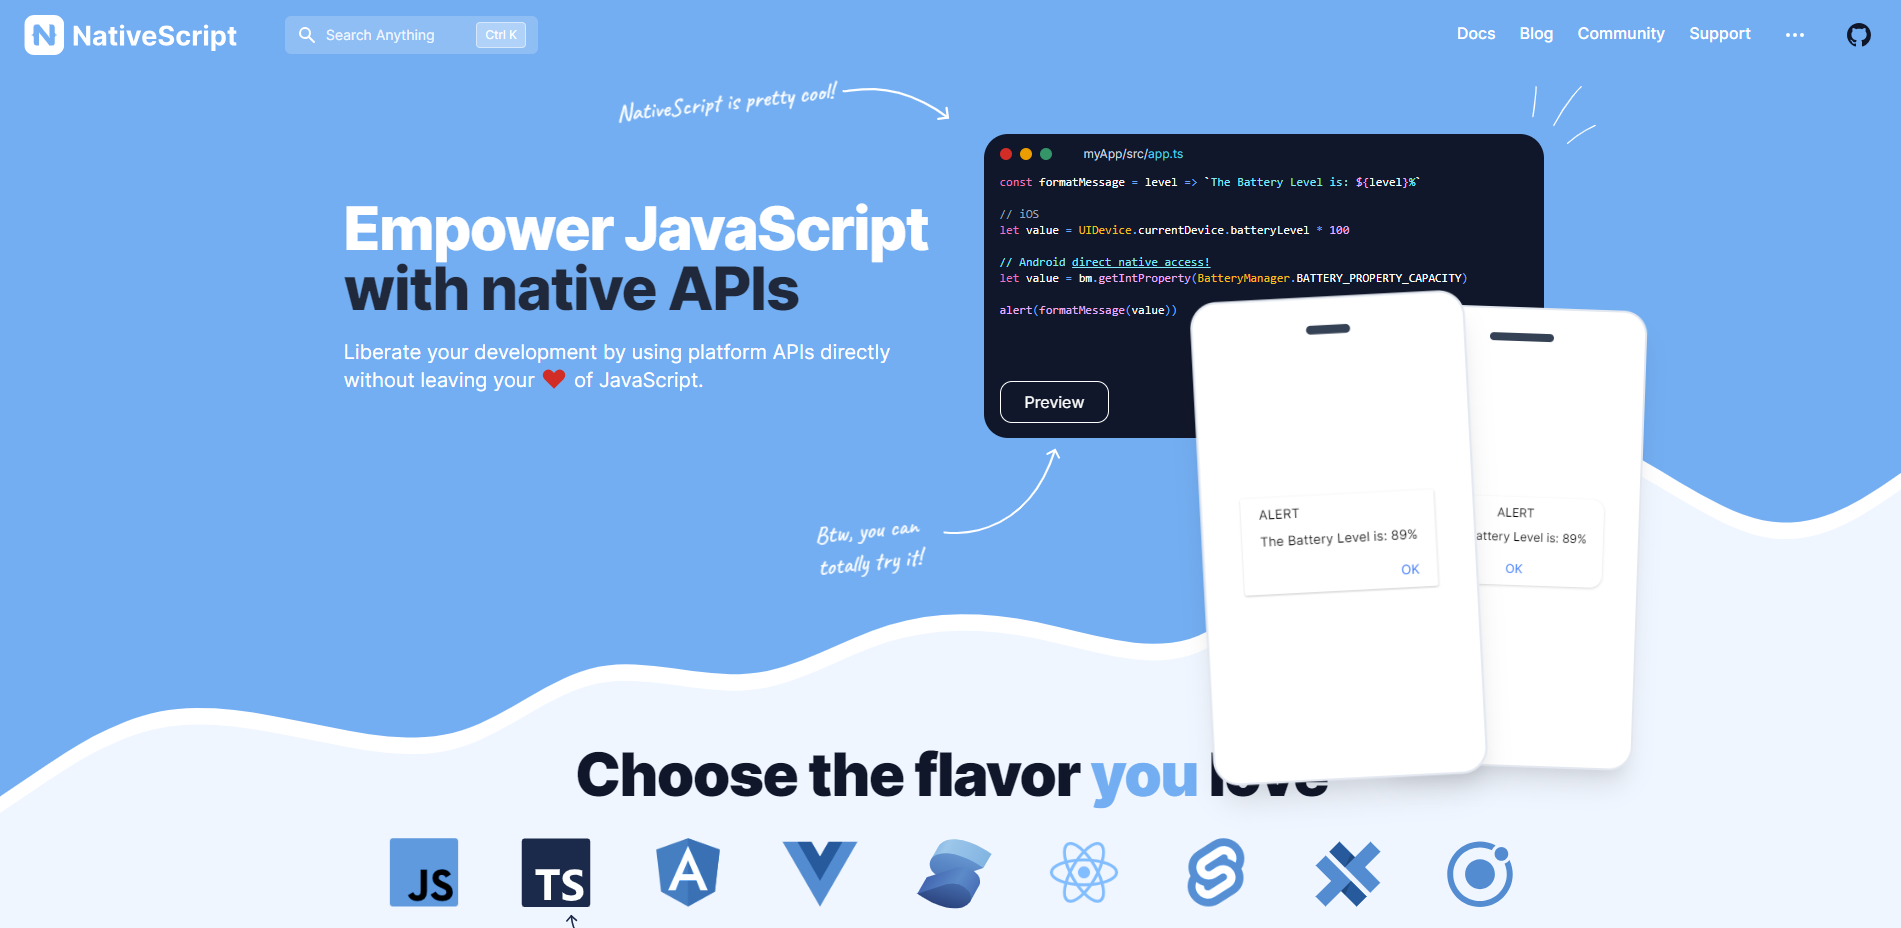 Top 9 native app builder tools: NativeScript